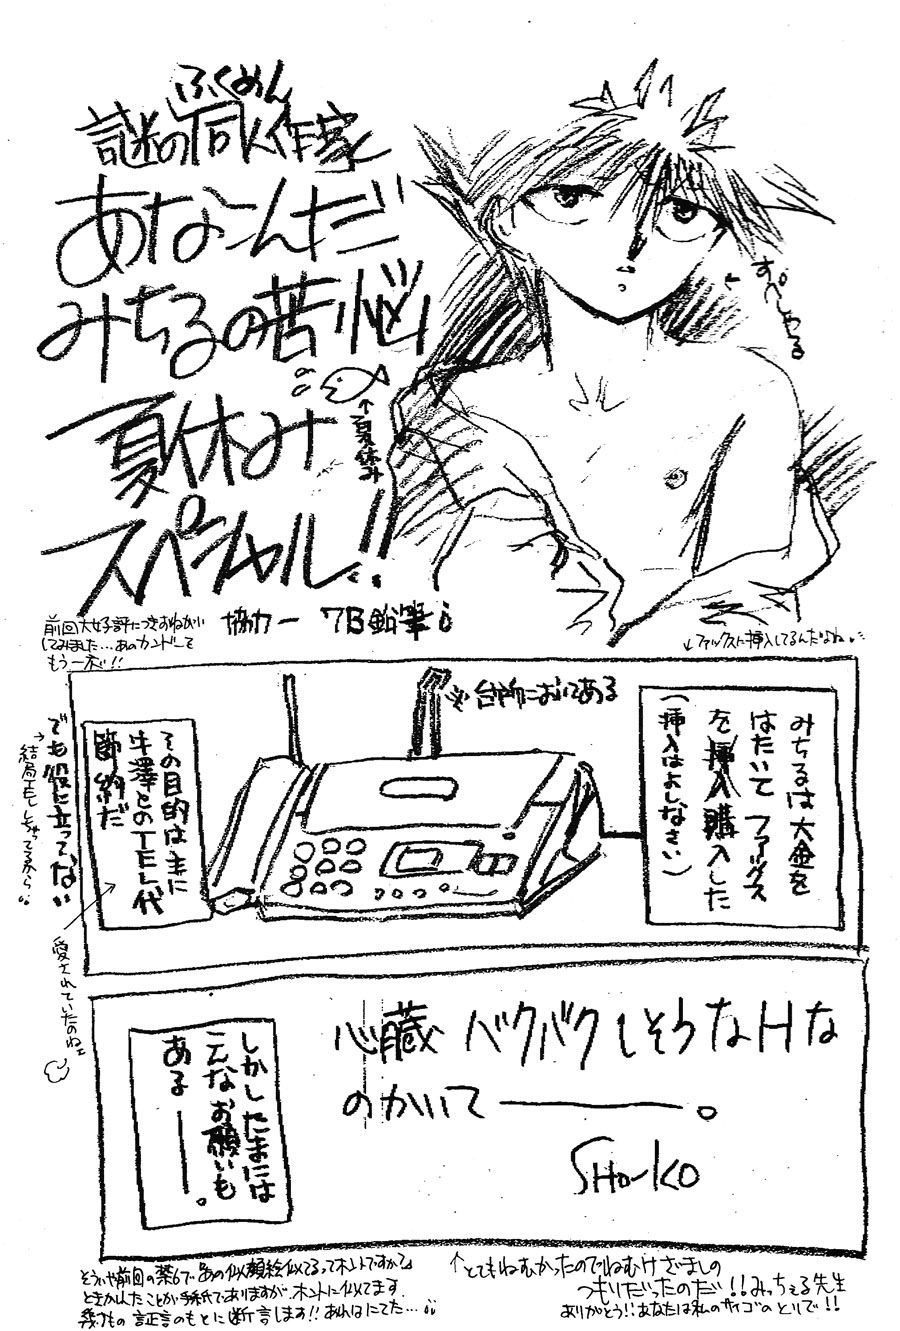 【漫画】钟ヶ江しょうこ《药店》 Img18324